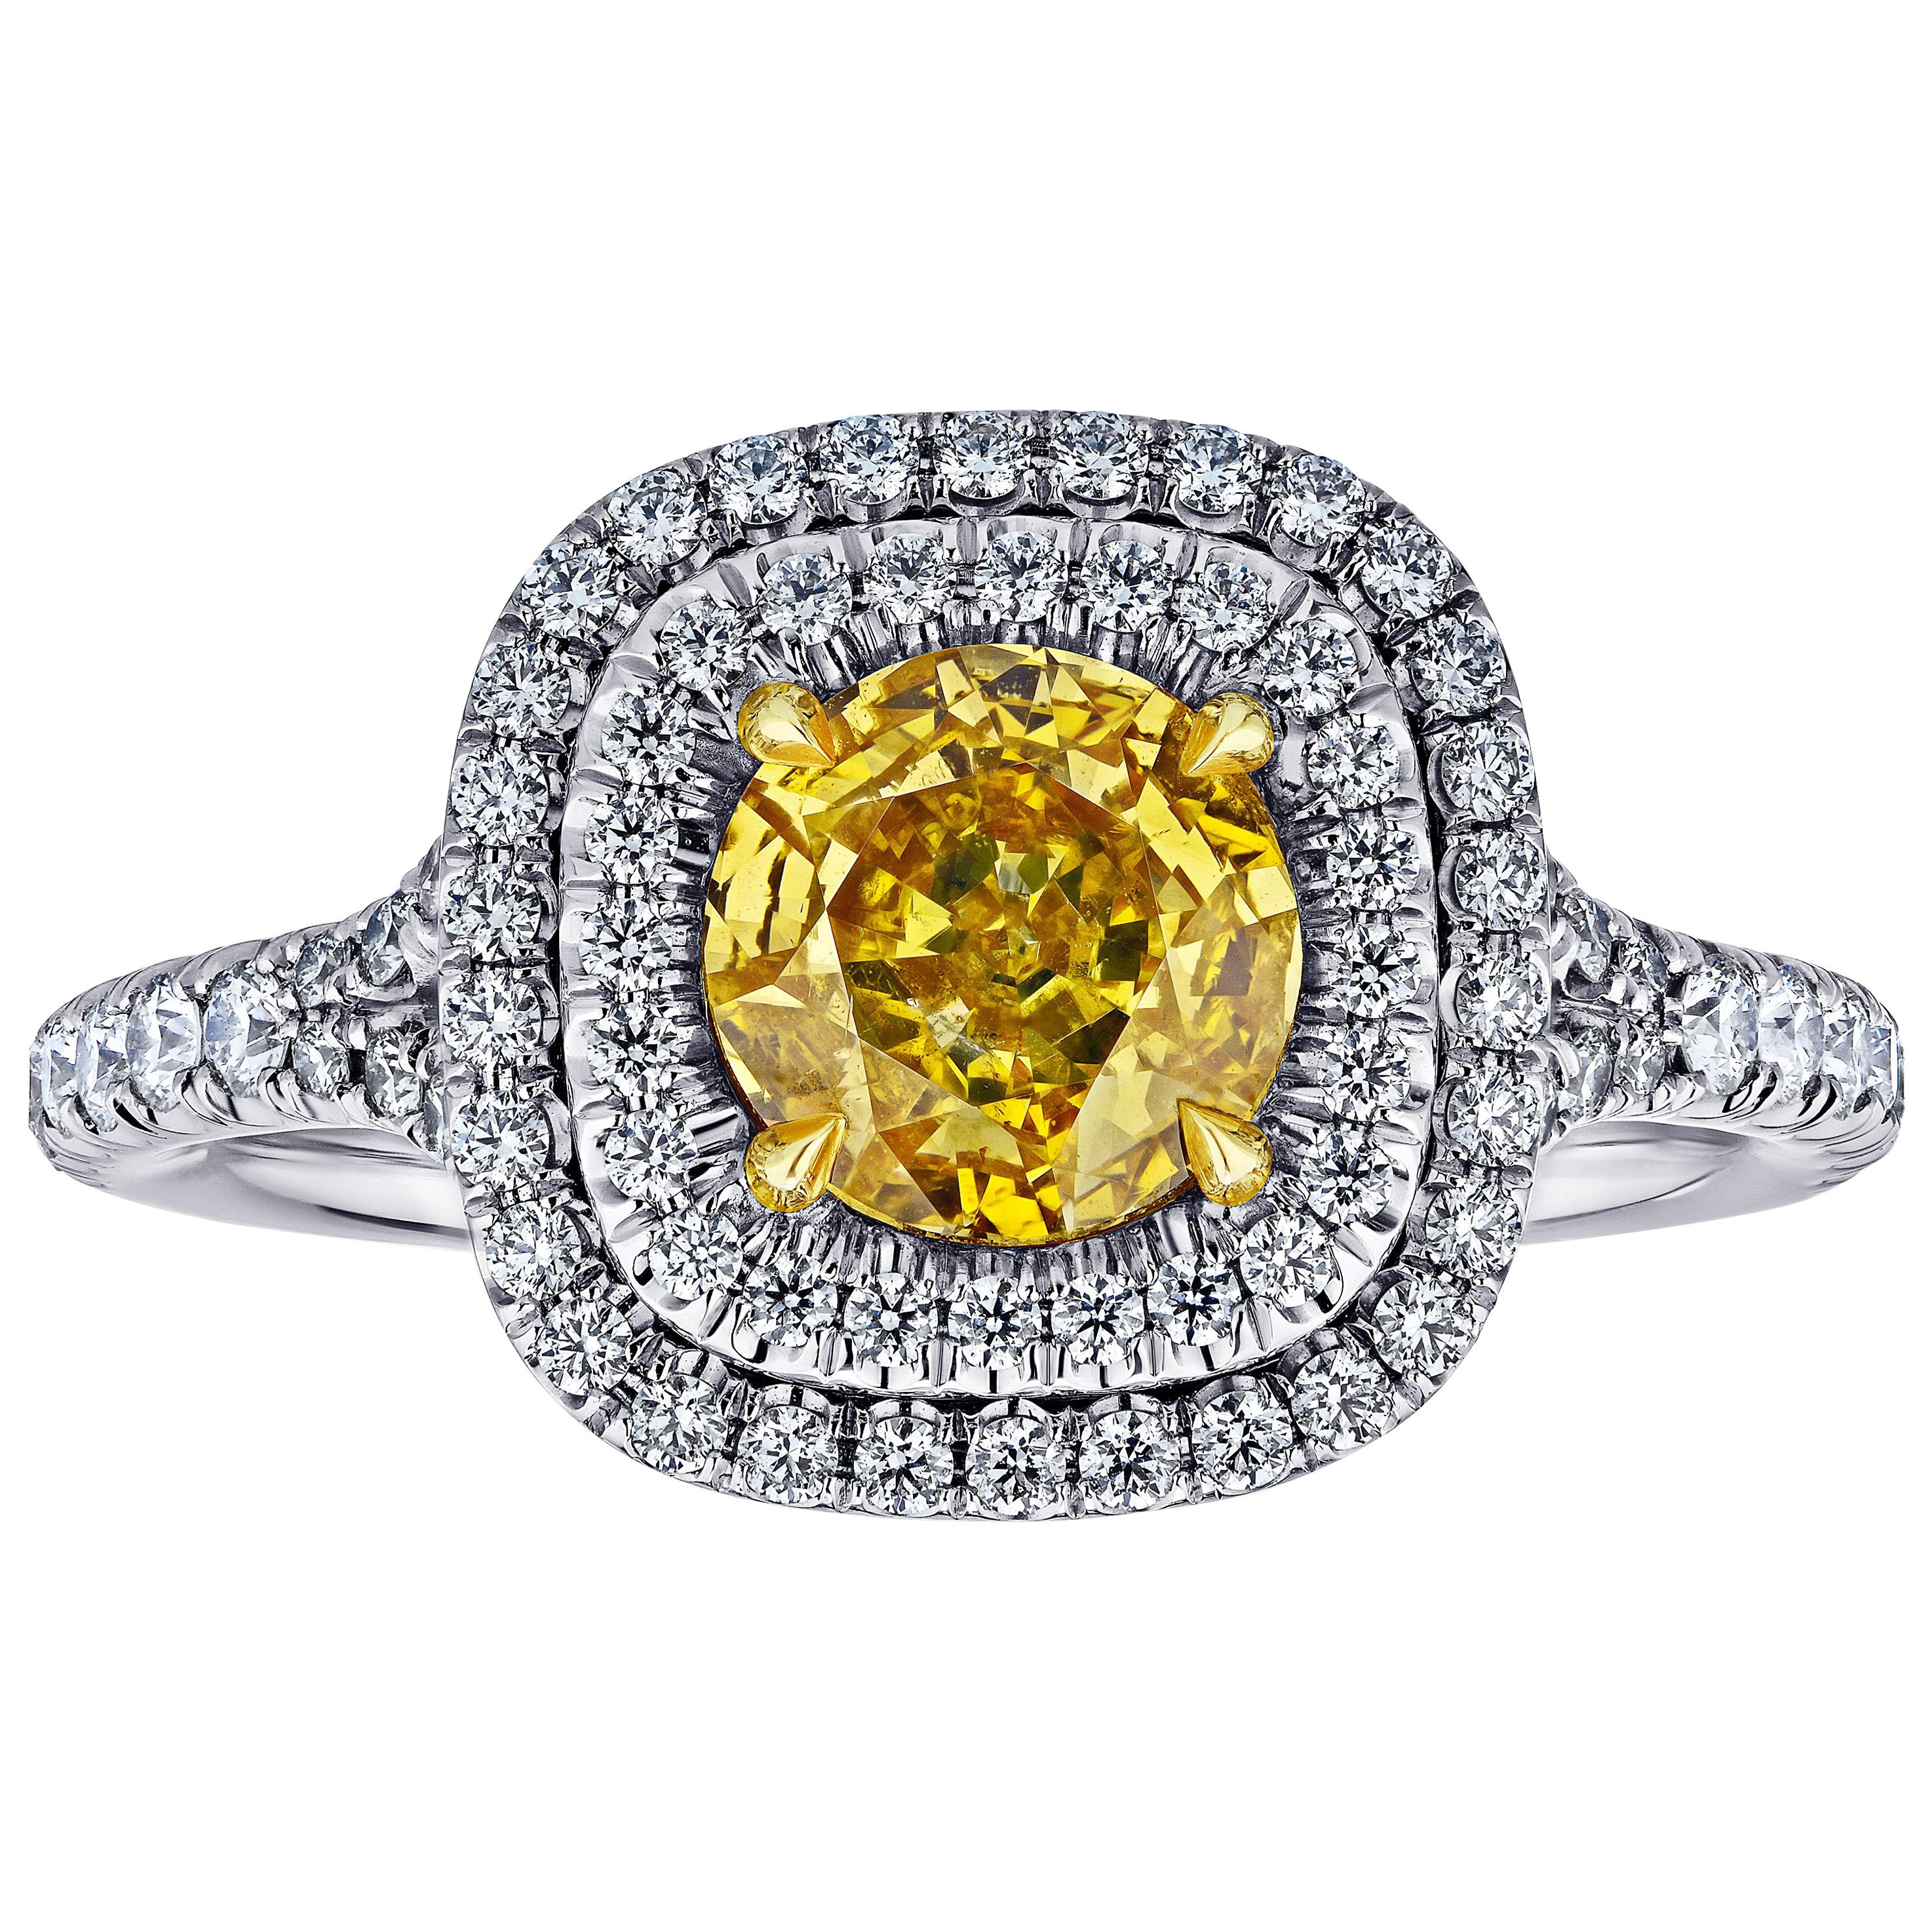 GIA Certified 1.02 Carat Diamond Natural Fancy Intense Yellow Orange Color Ring